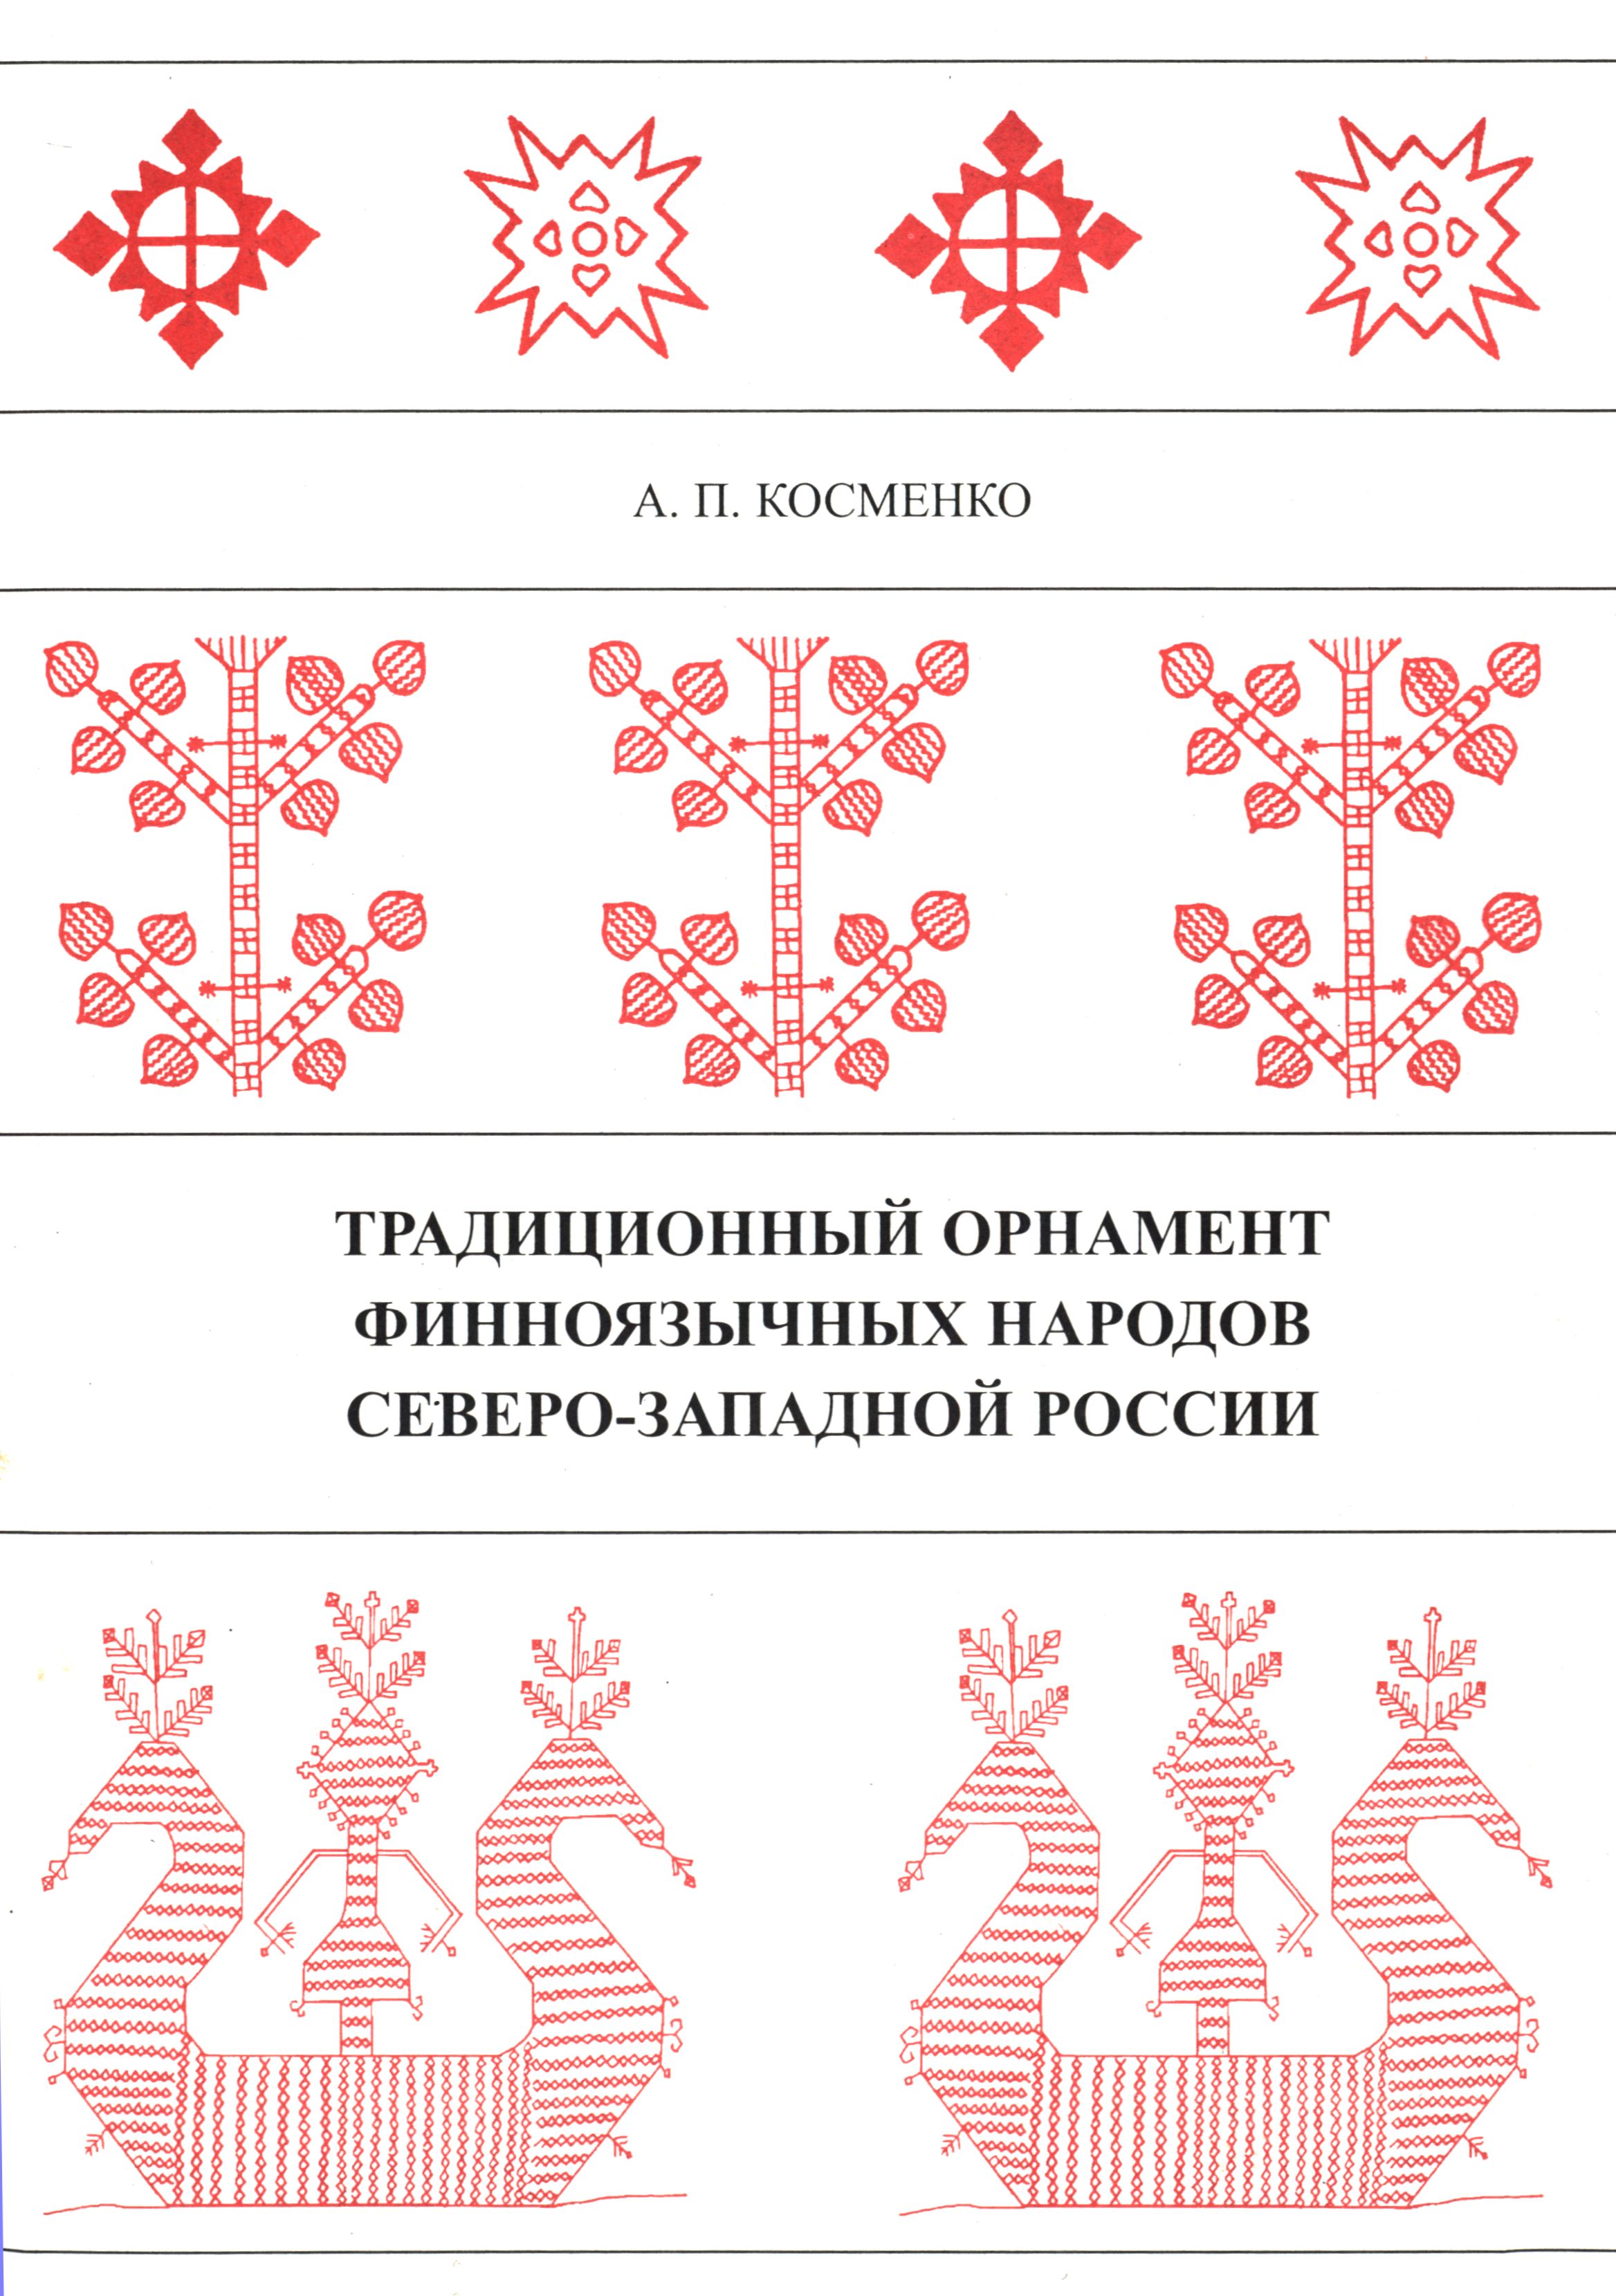 Традиционные орнаменты народов России